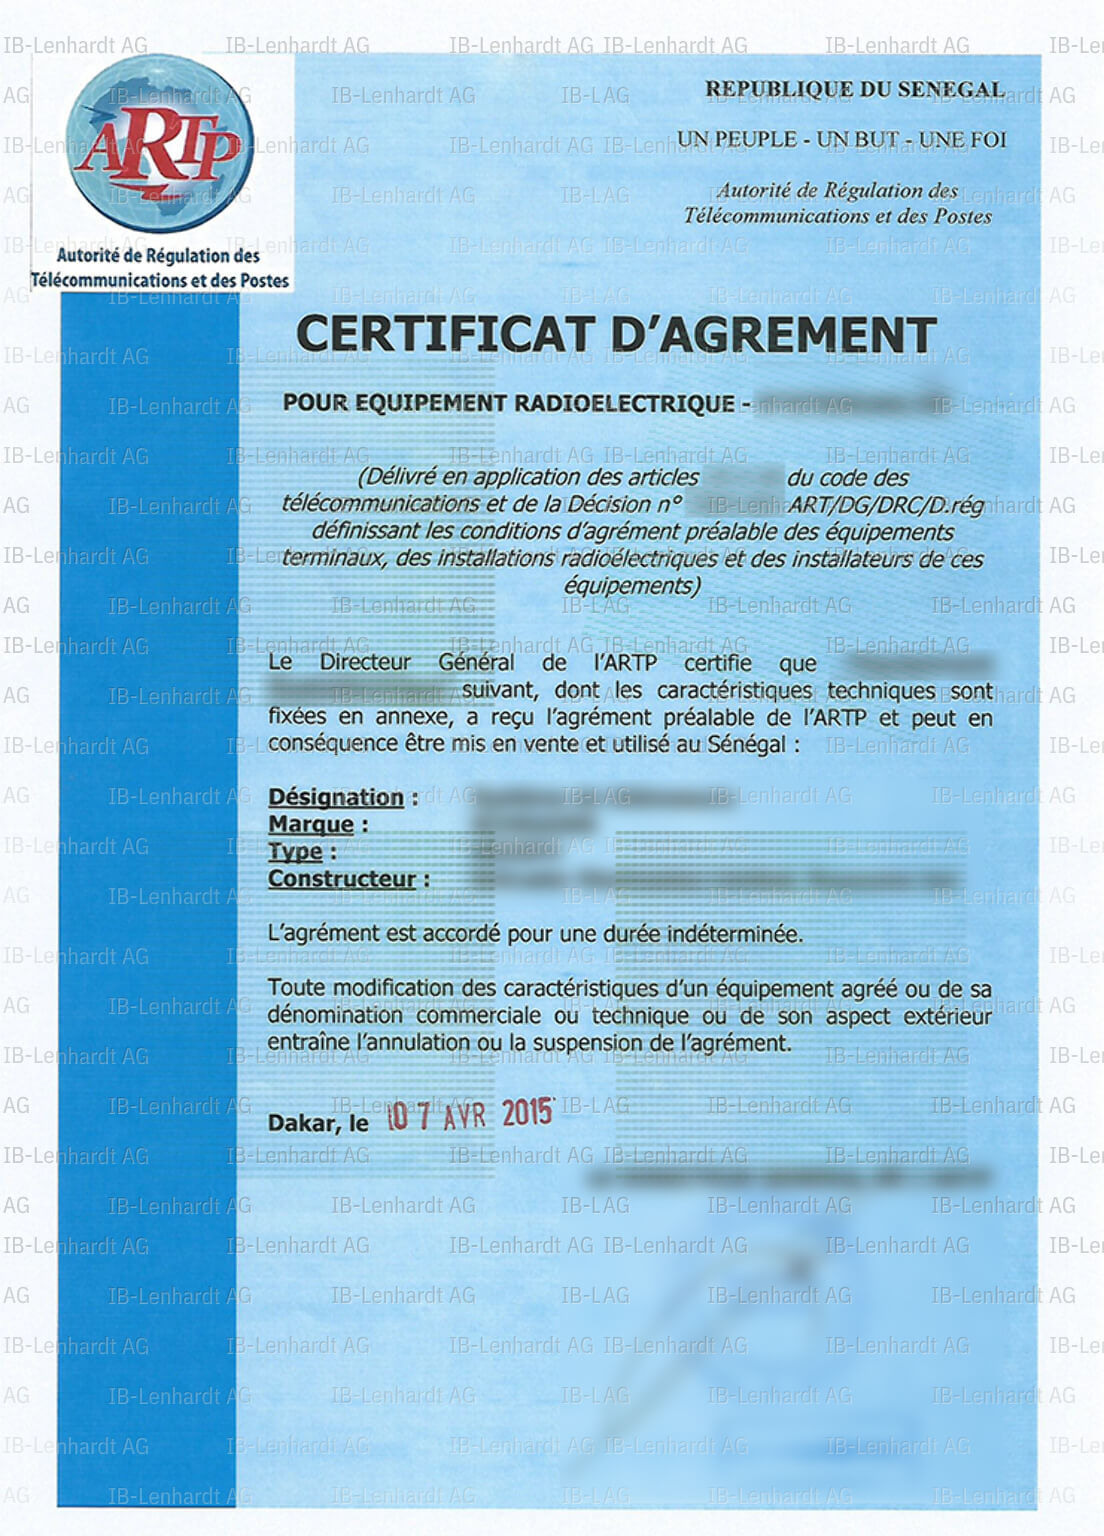 Certificate example Senegal